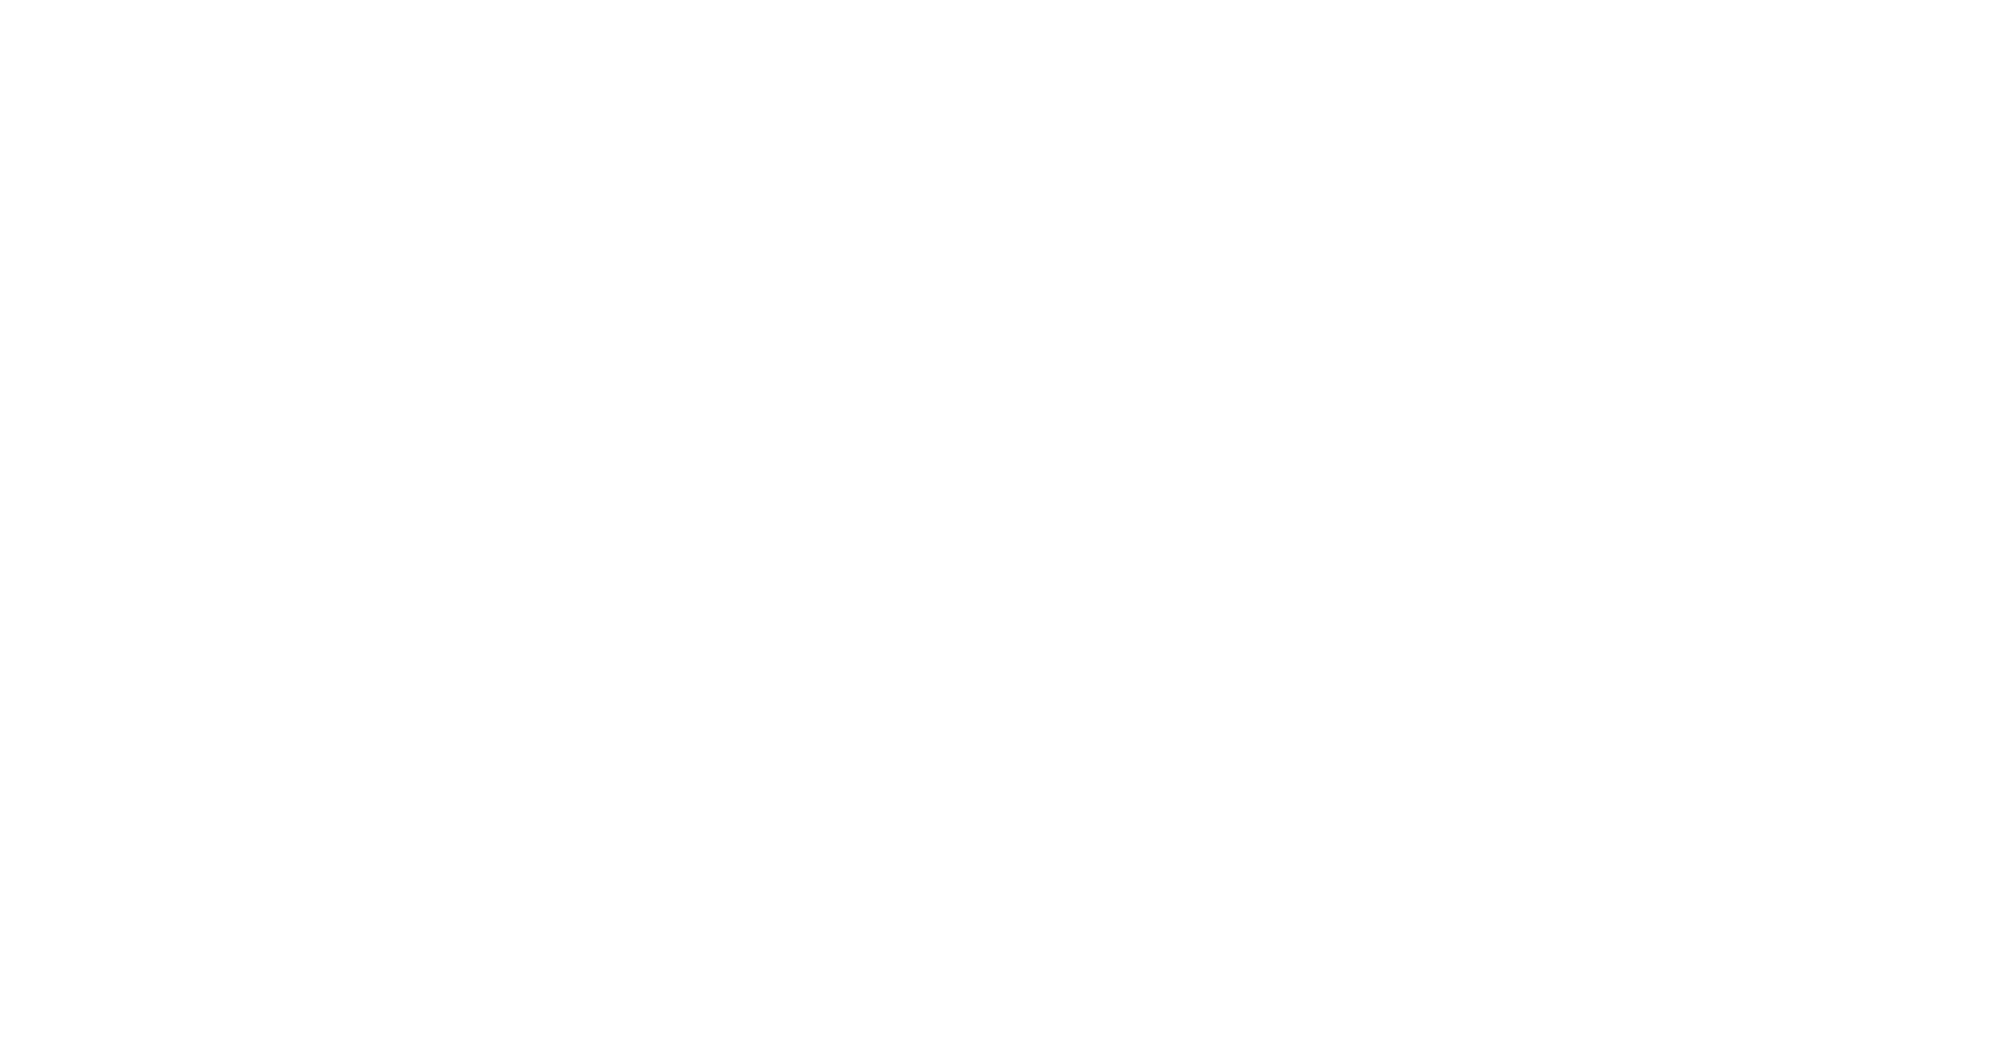 The Baltimore Bullet logo